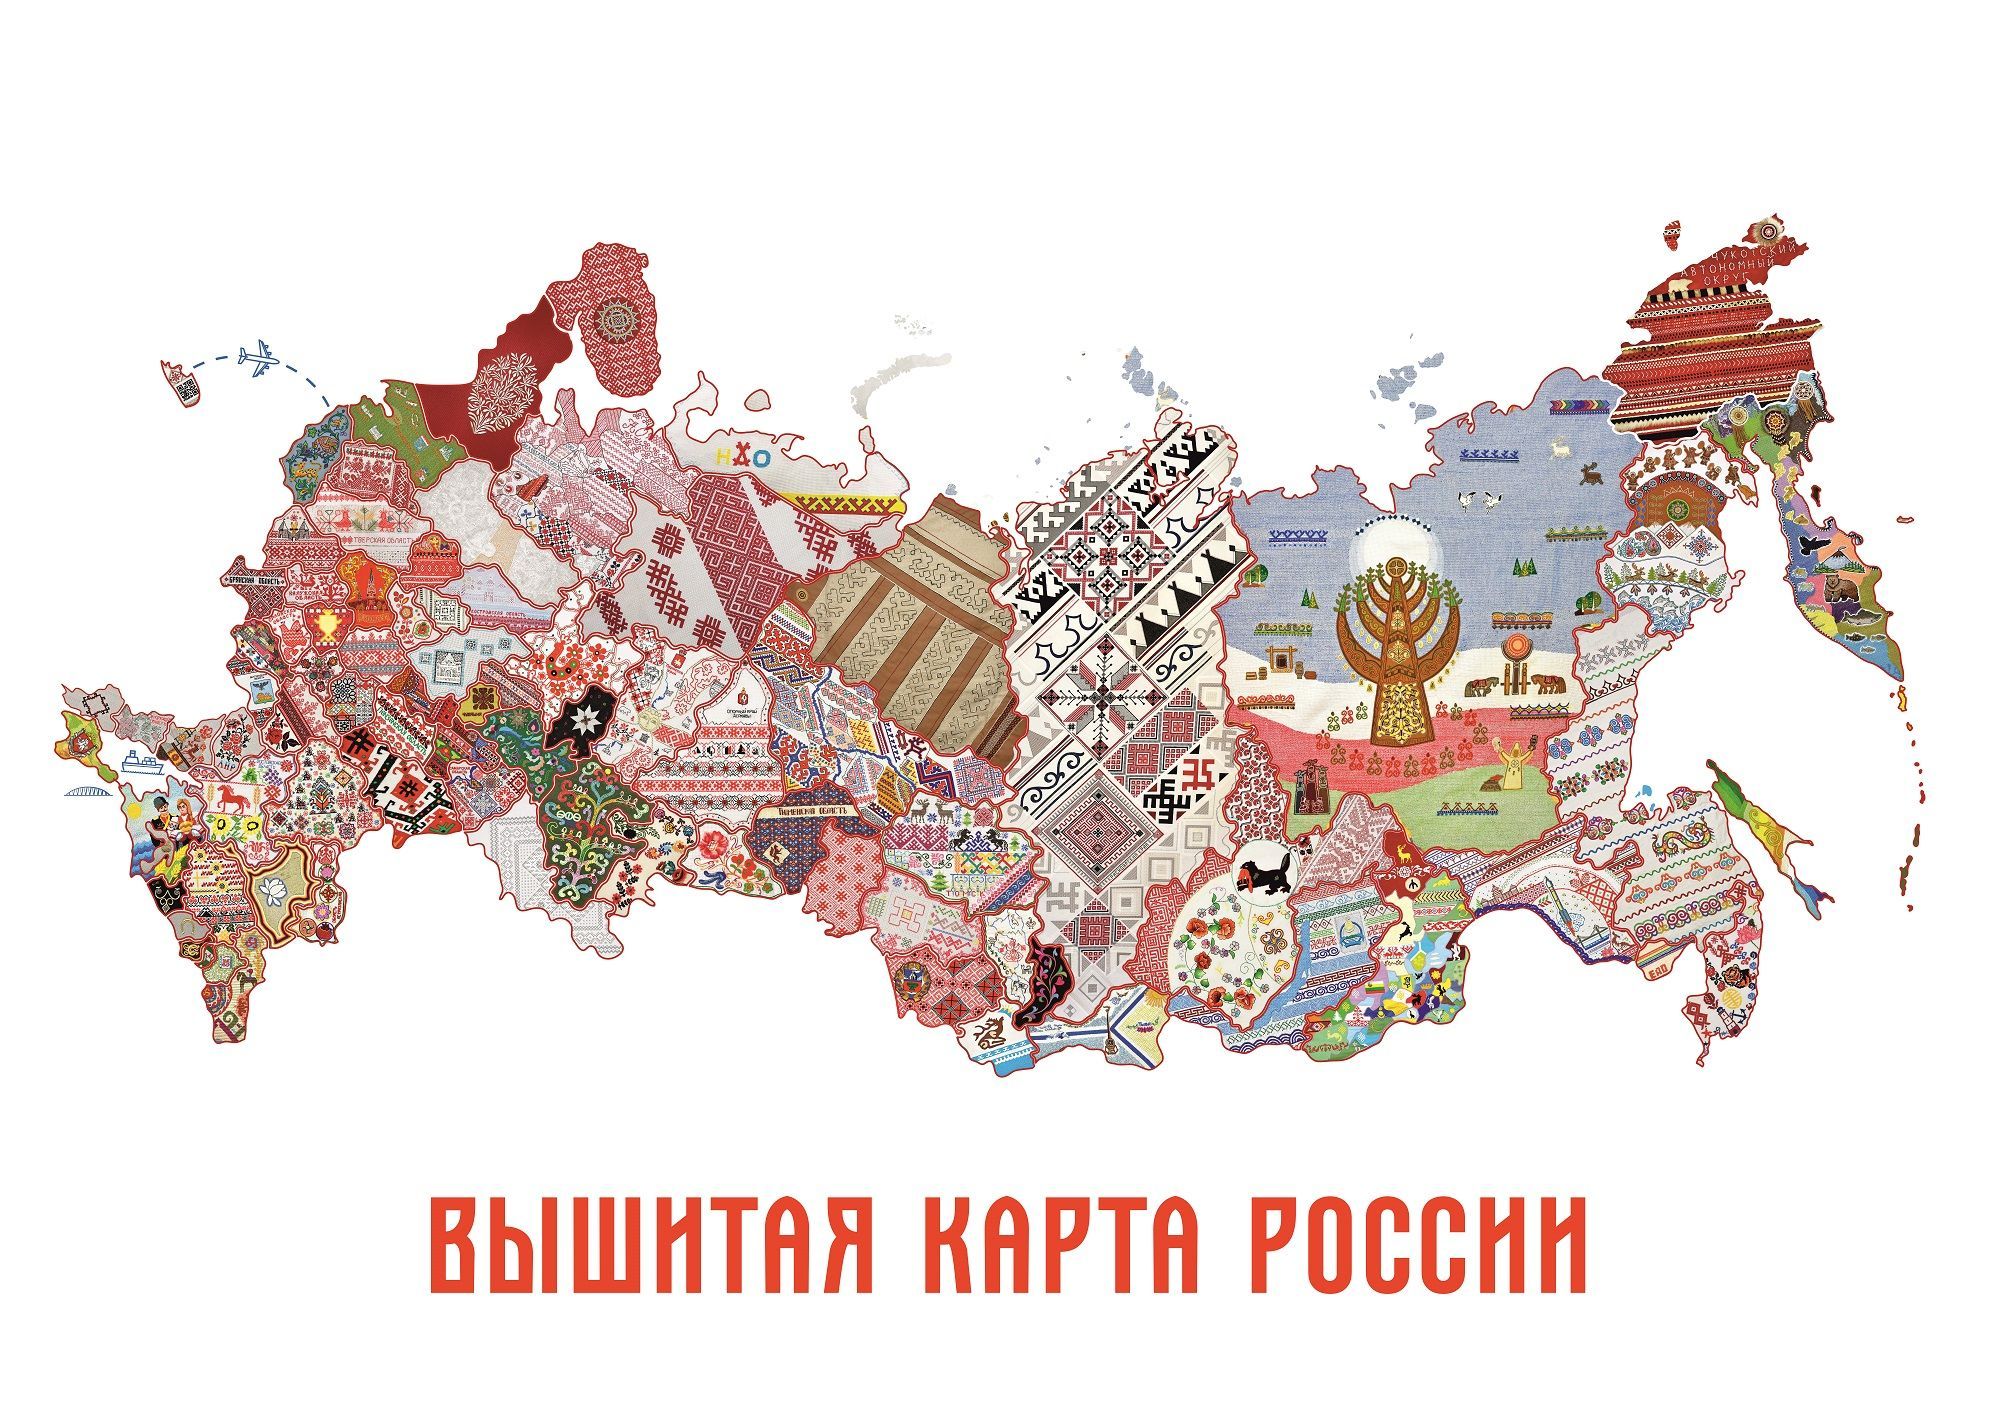 Вышитая карта россии проект чувашия